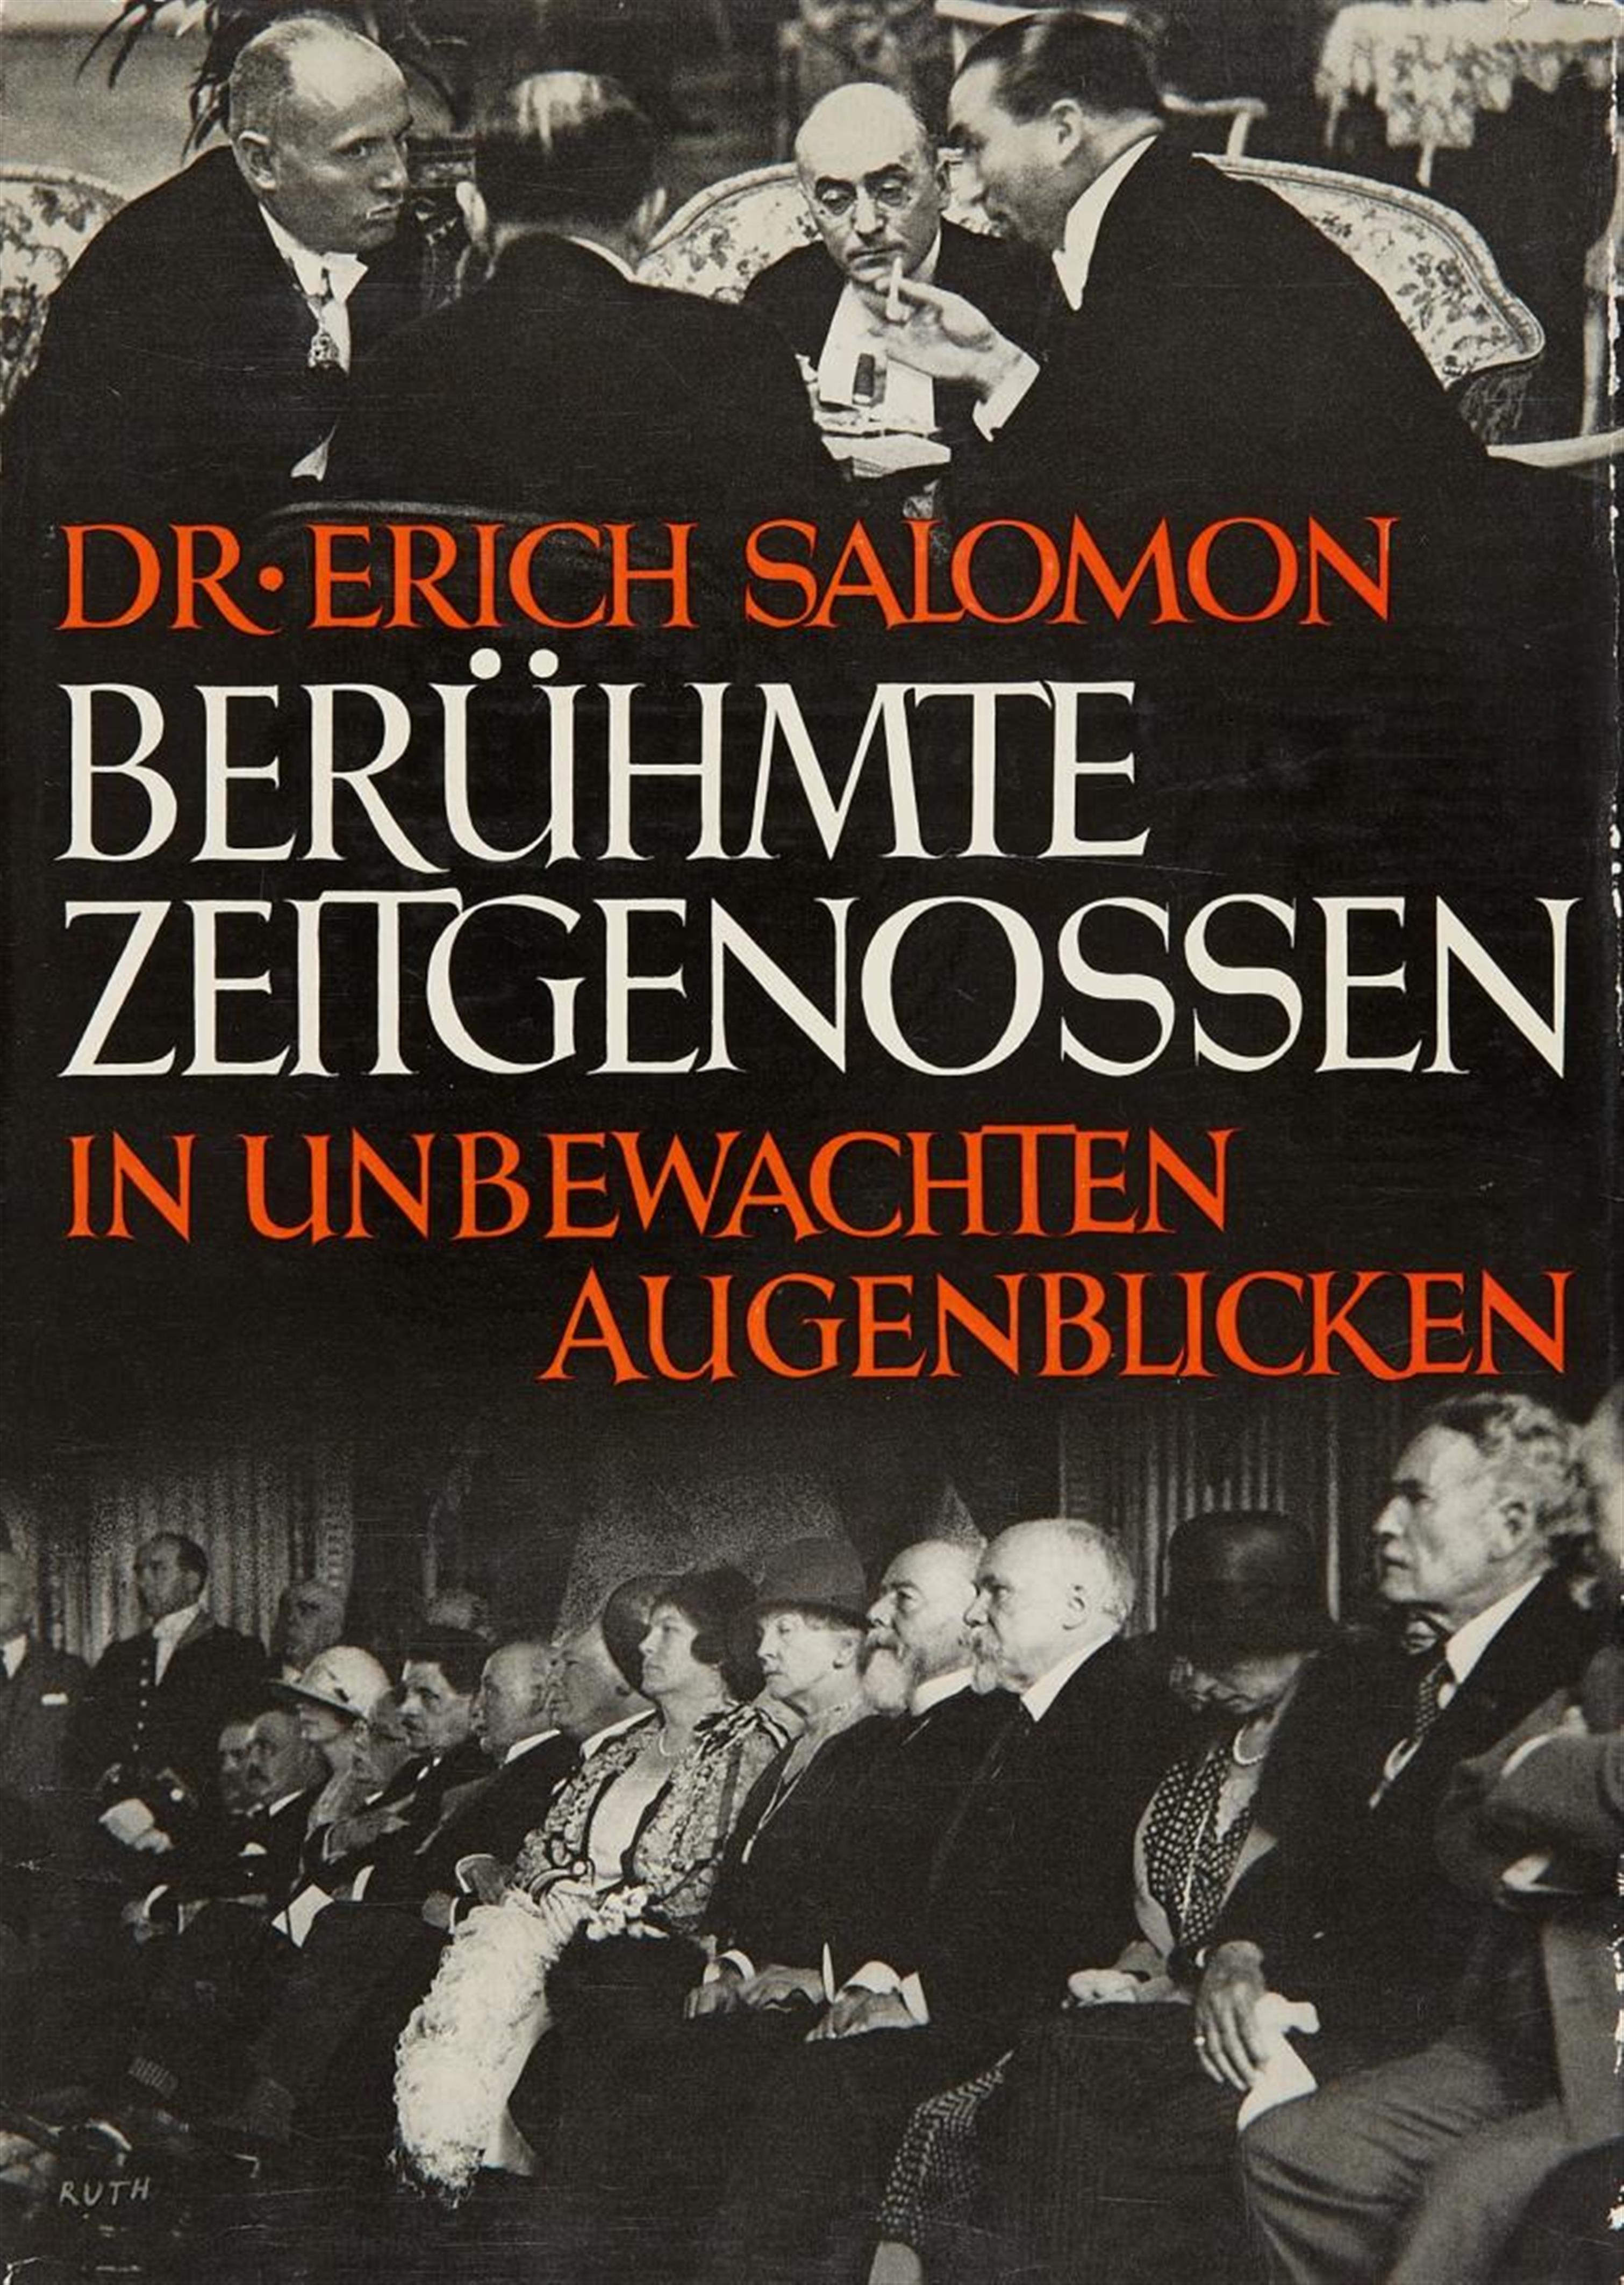 Erich Salomon - Berühmte Zeitgenossen in unbewachten Augenblicken (Famous people in unobserved moments) - image-1